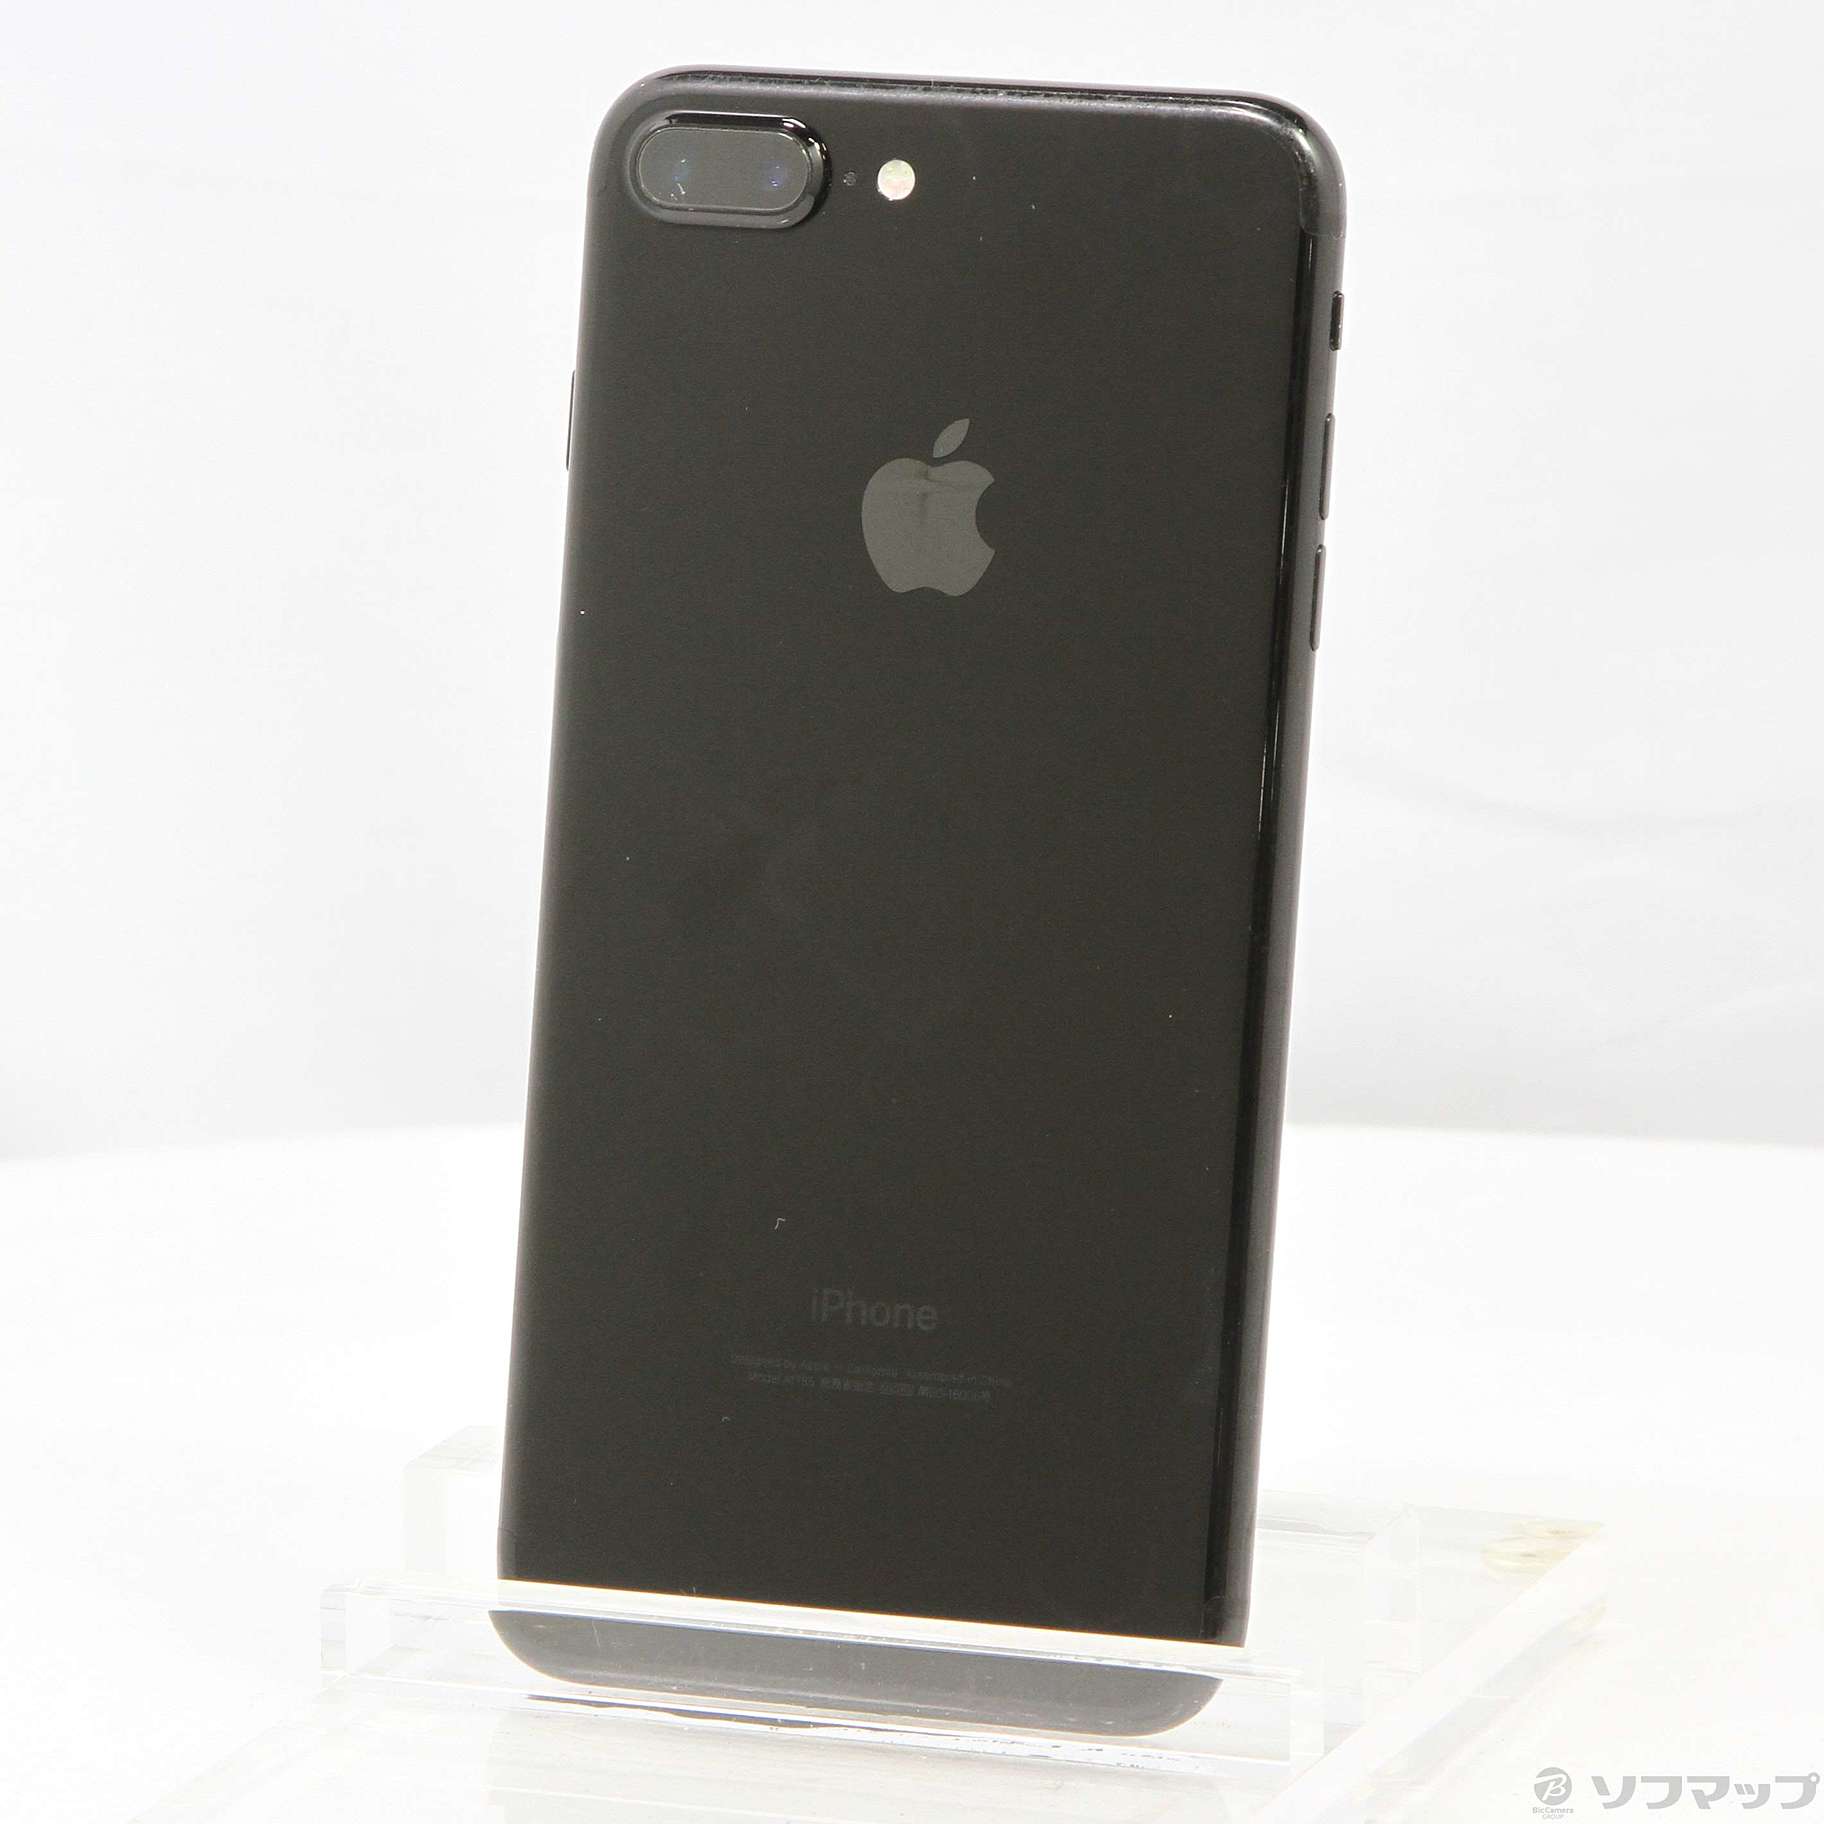 iPhone7 plus JetBlack 128GB SIMフリー